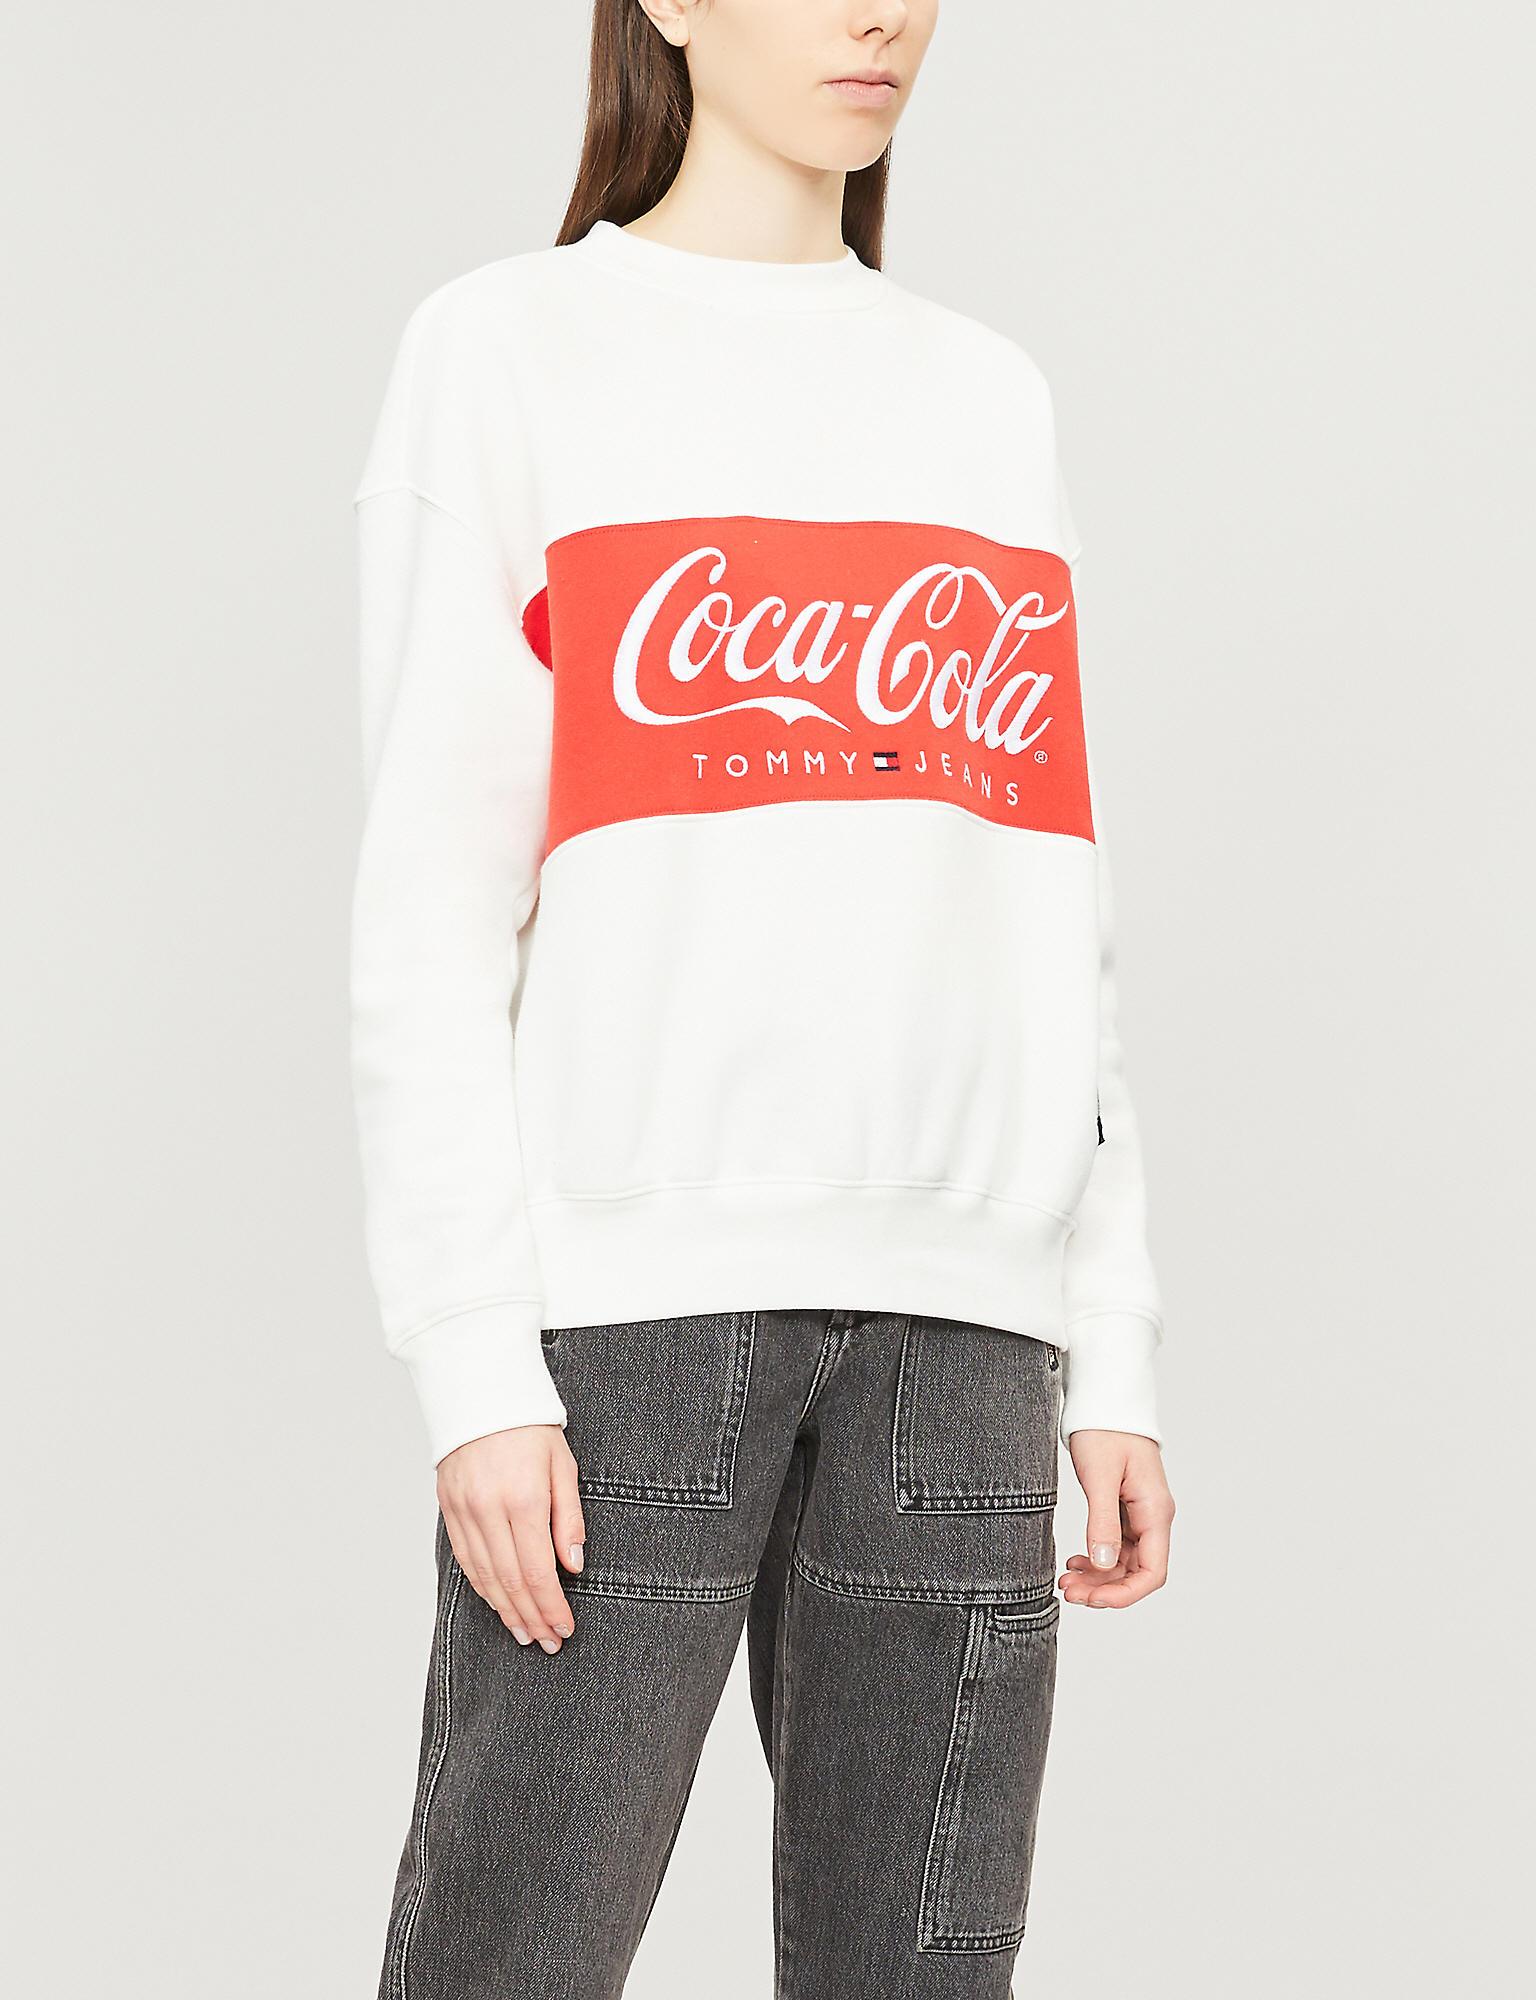 Tommy Hilfiger Denim Tommy X Coca Cola Cotton Sweatshirt in Bright White  (White) - Lyst